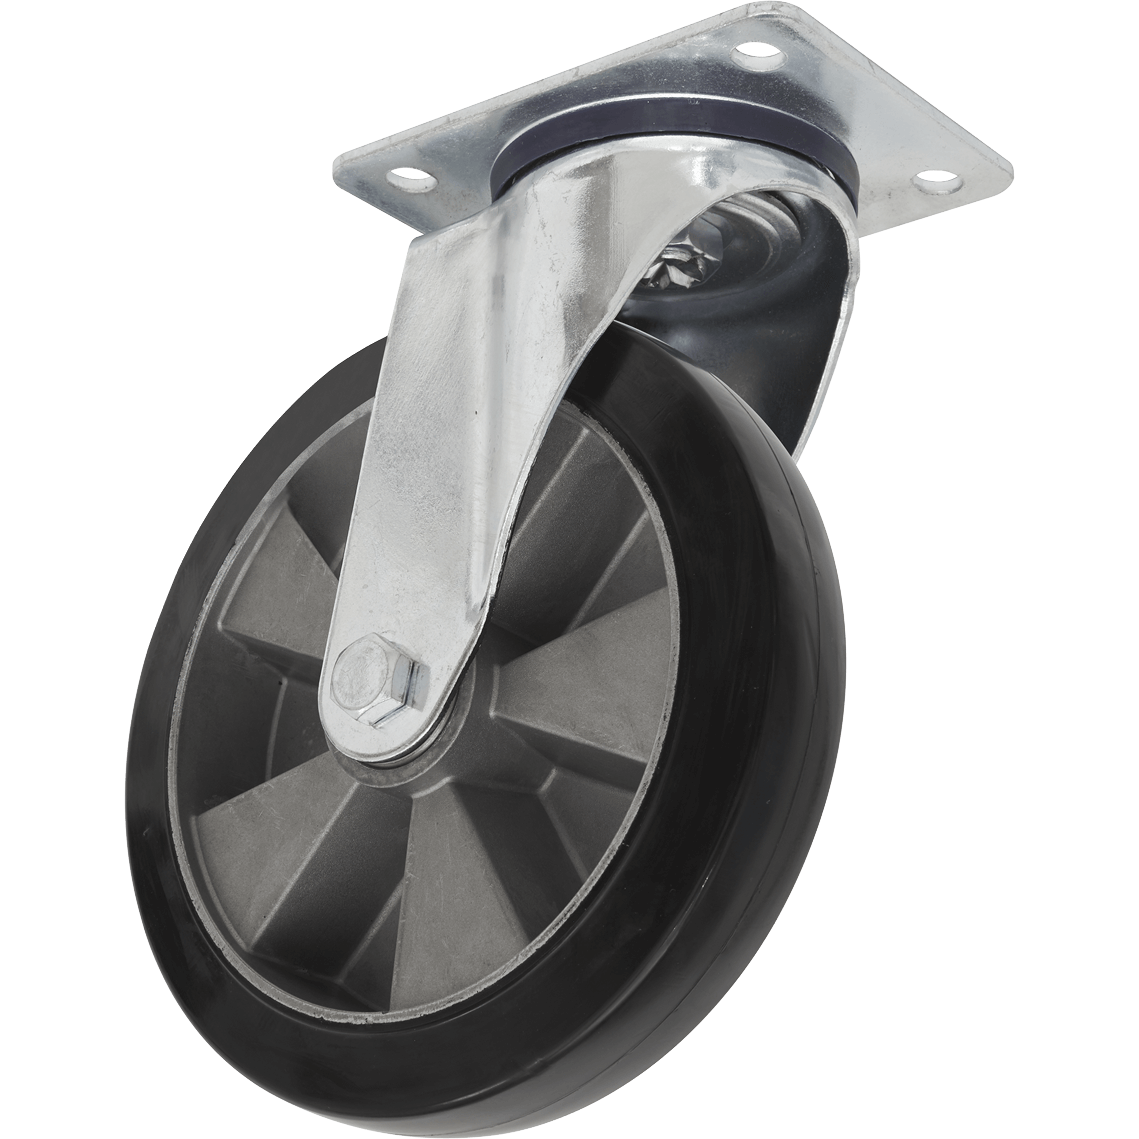 Sealey Heavy-Duty Rubber Swivel Castor Wheel 200mm